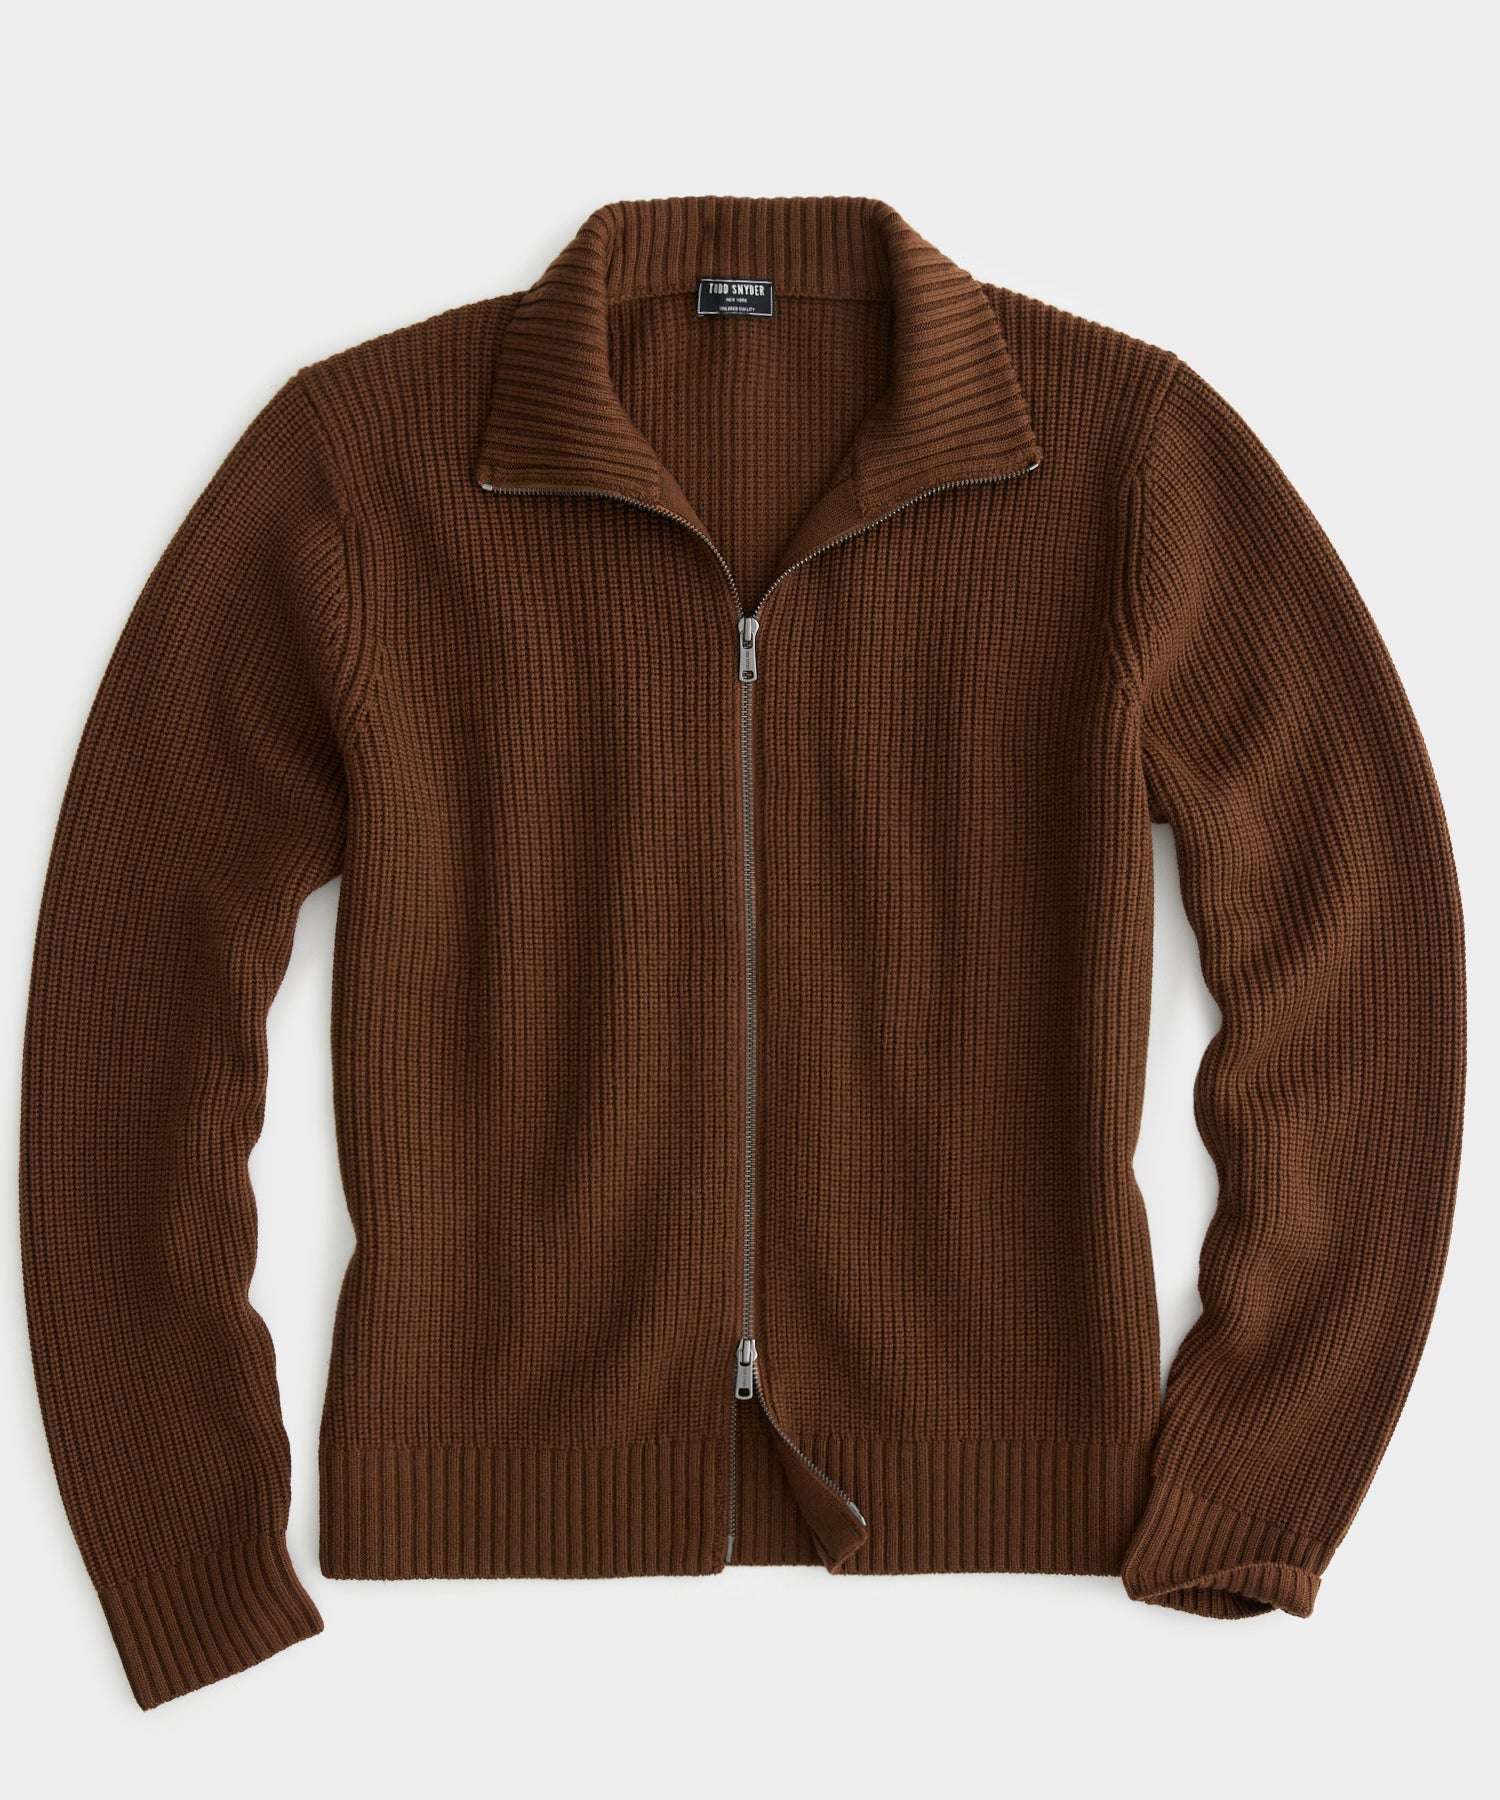 Men's Merino Full Zip Jacket - Light Brown MEN'S